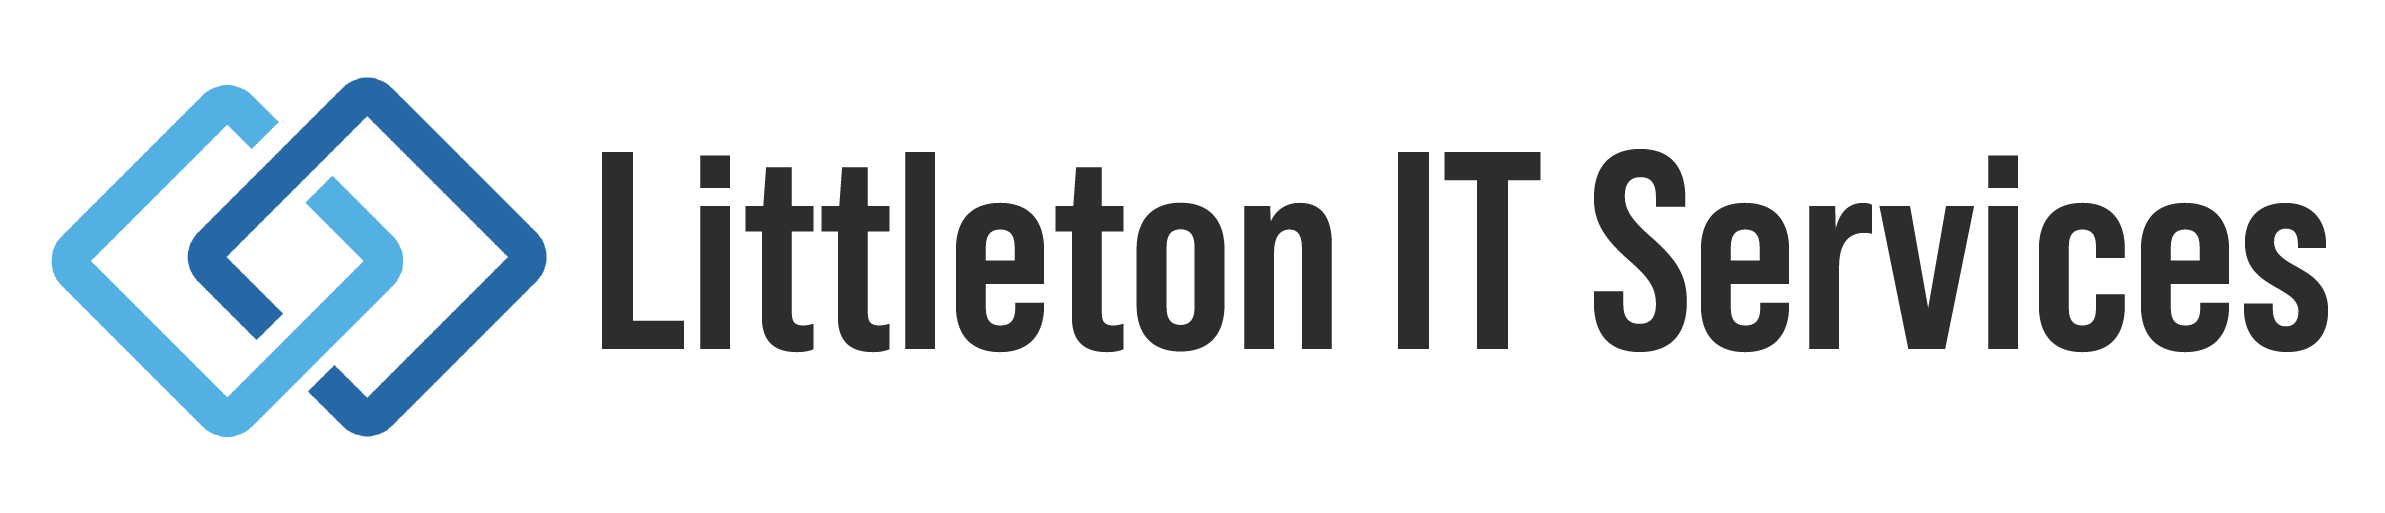 Littleton IT Services